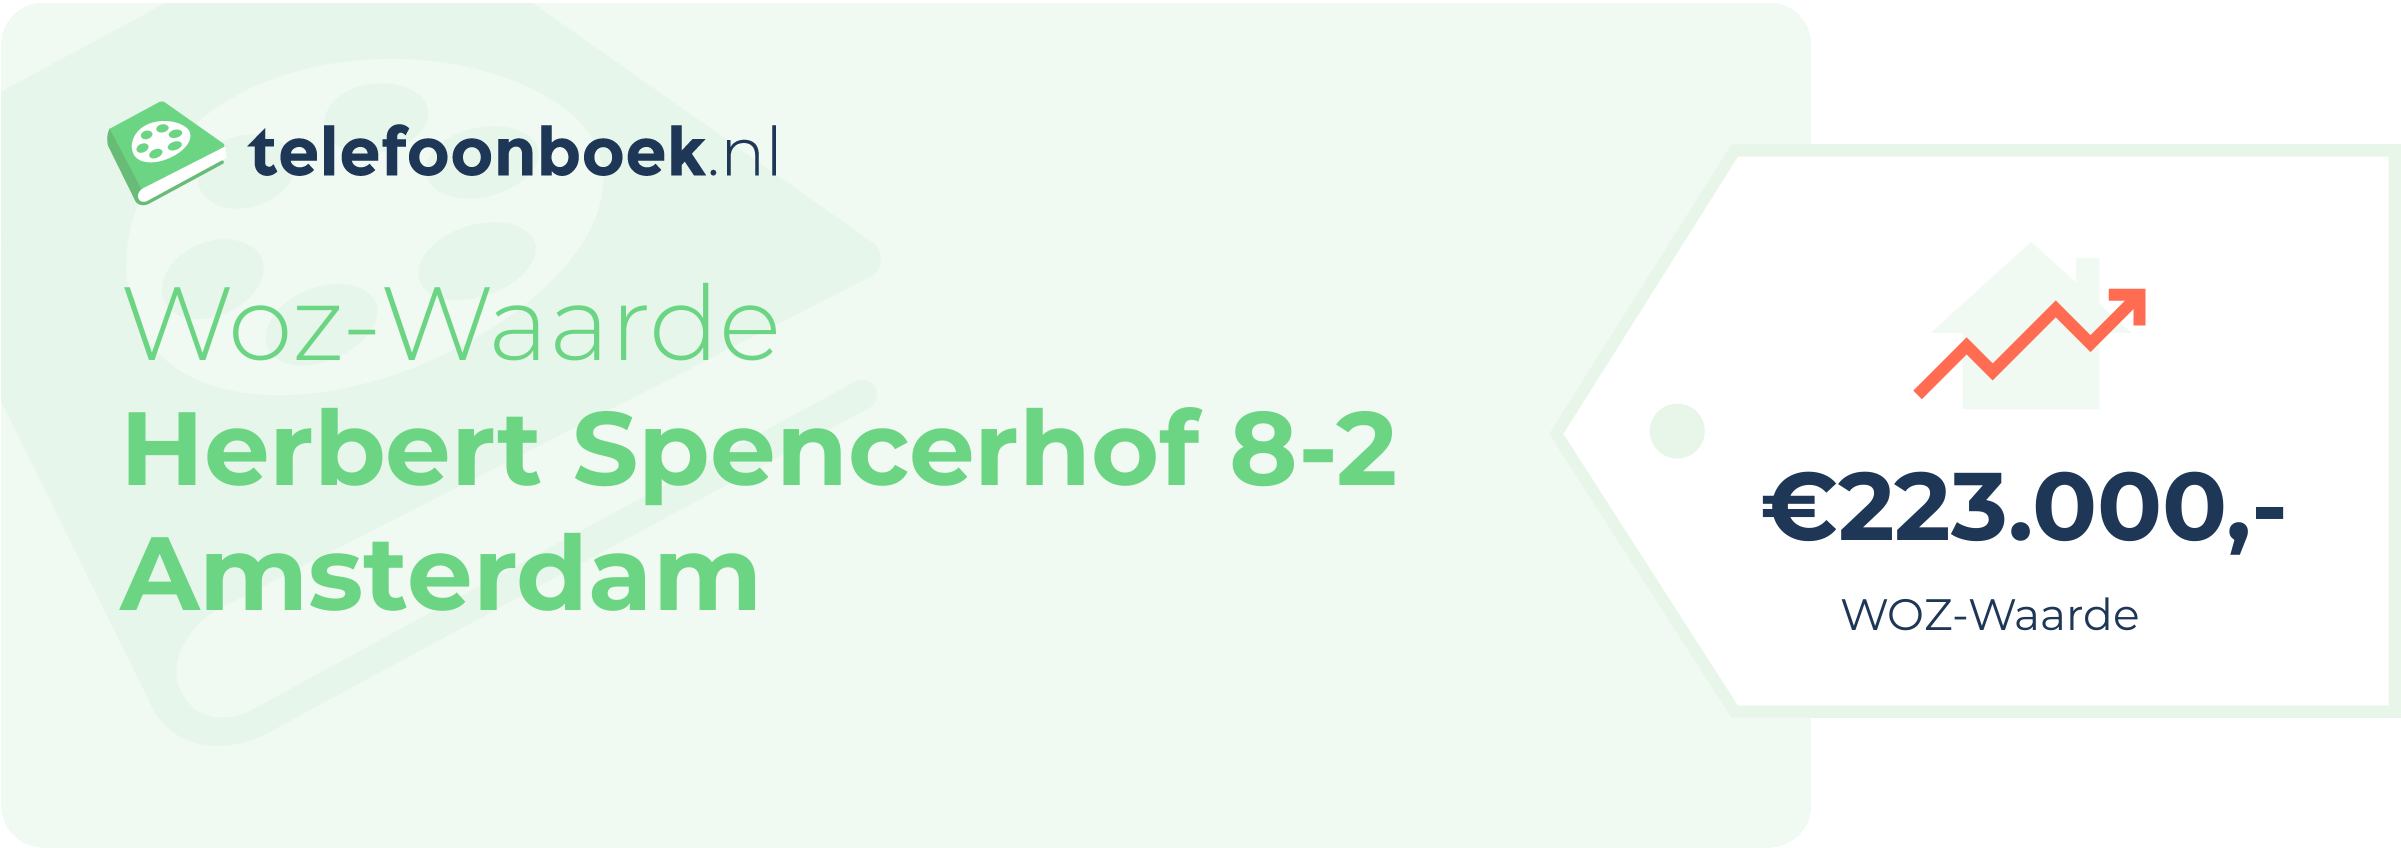 WOZ-waarde Herbert Spencerhof 8-2 Amsterdam